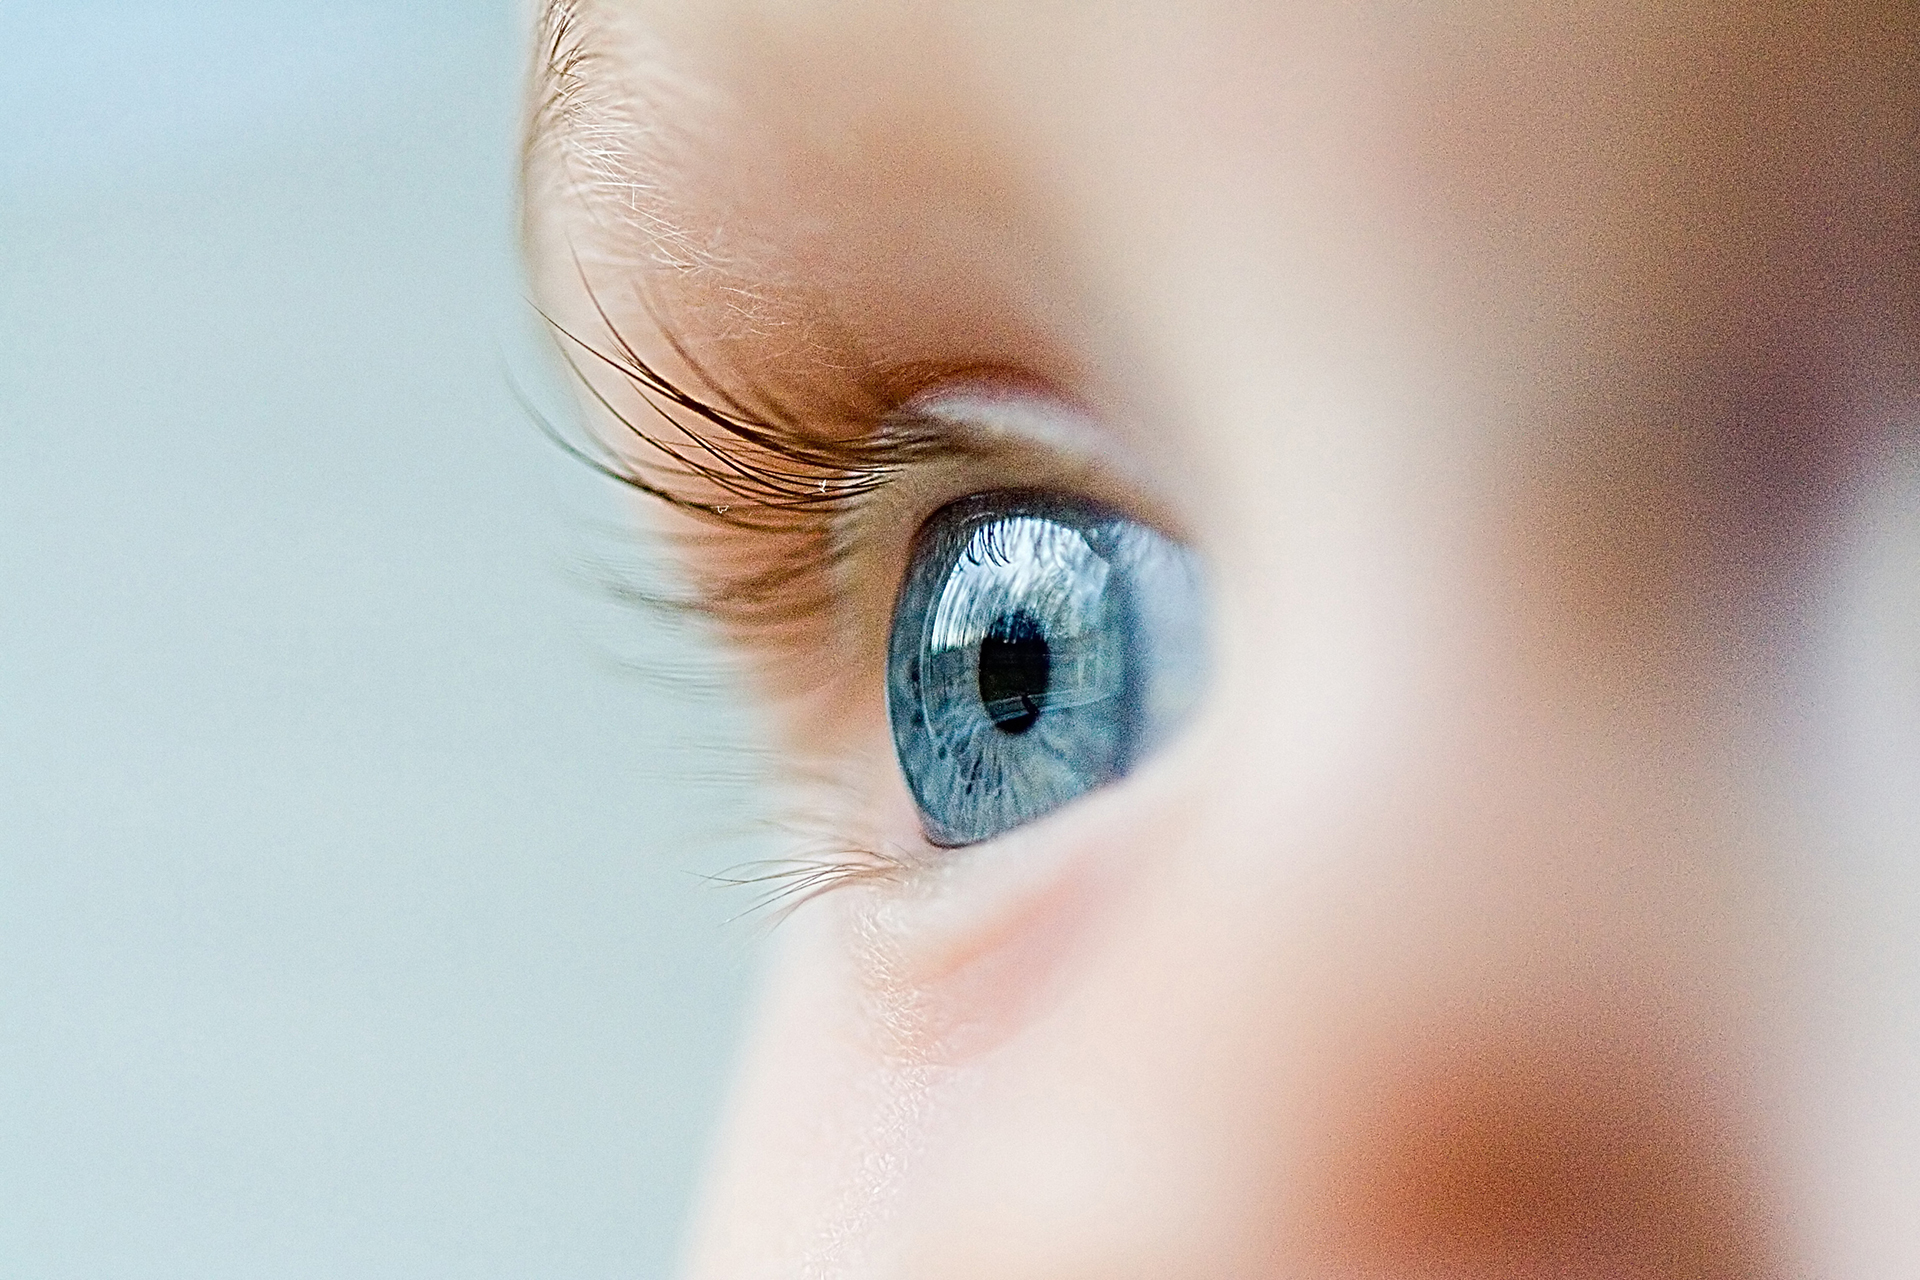 La Academia Americana de Oftalmología insiste en que la detección y el tratamiento temprano de los problemas de visión pueden evitar la progresión de la pérdida de la vista y prevenir enfermedades (Shutterstock)